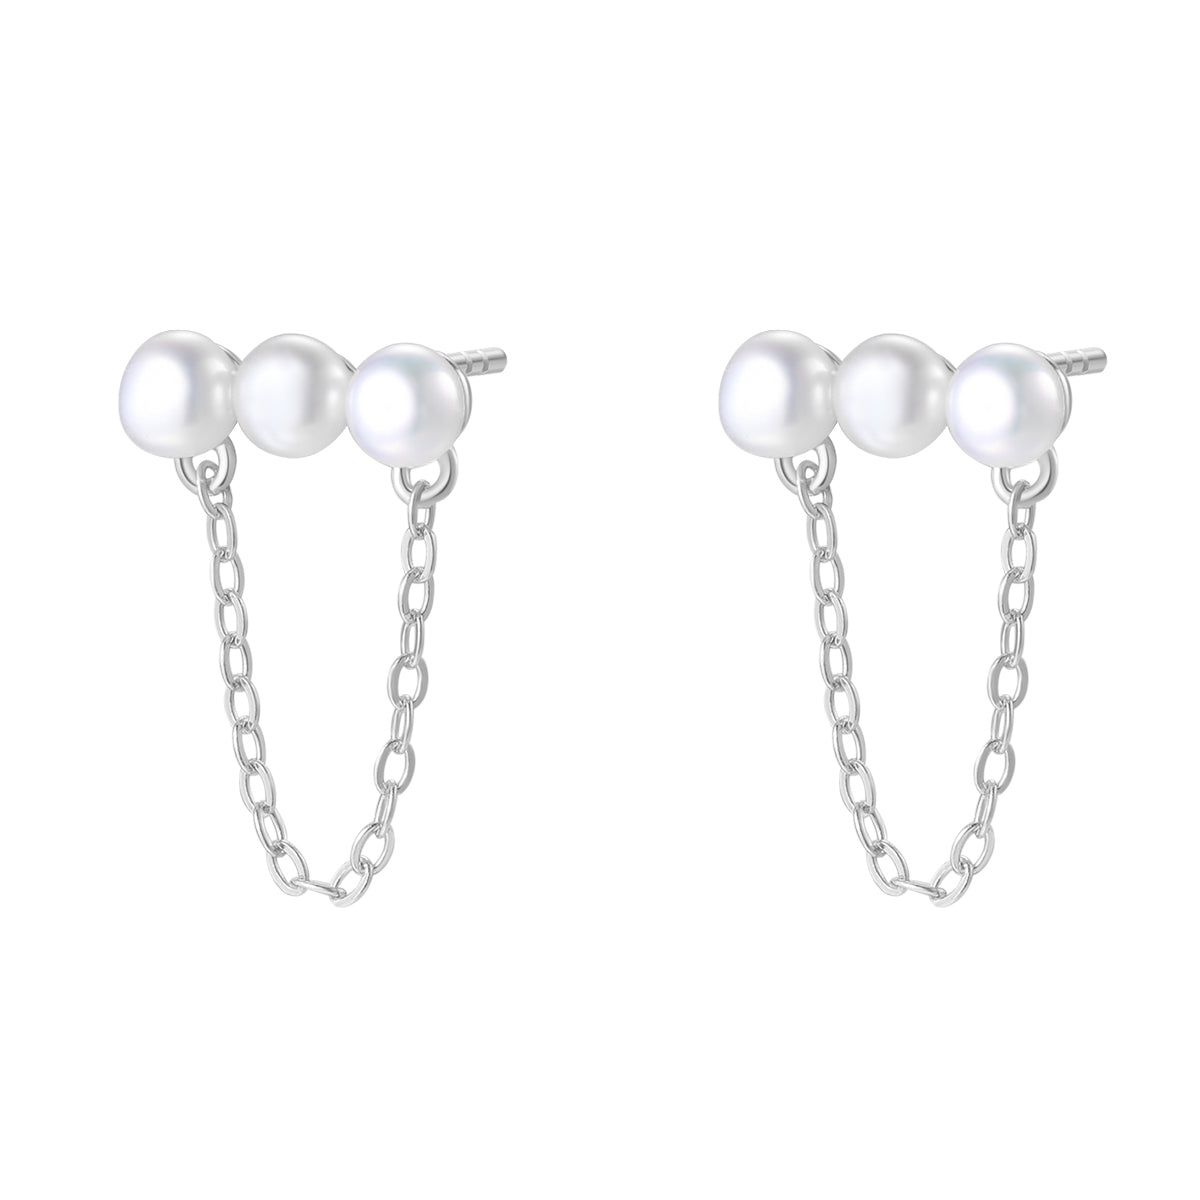 Ketten Ohrringe Silber 925 mit Perlen